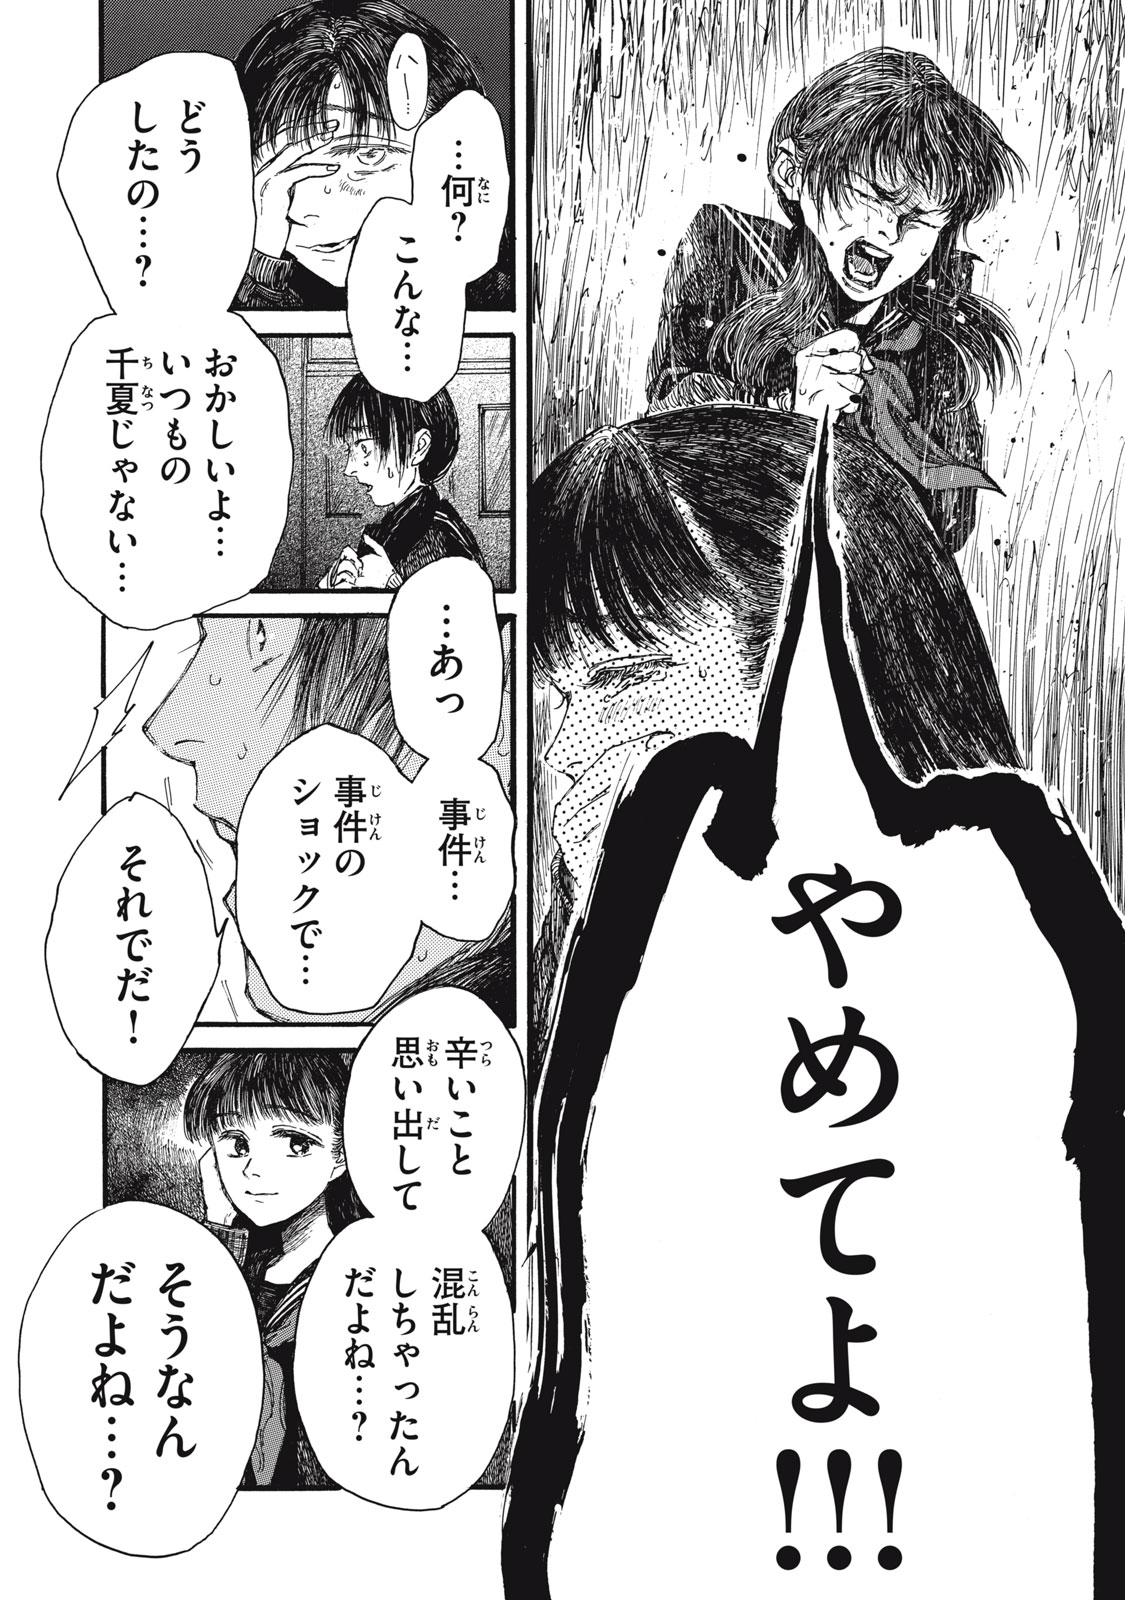 Watashi no Hara no Naka no Bakemono - Chapter 36 - Page 5